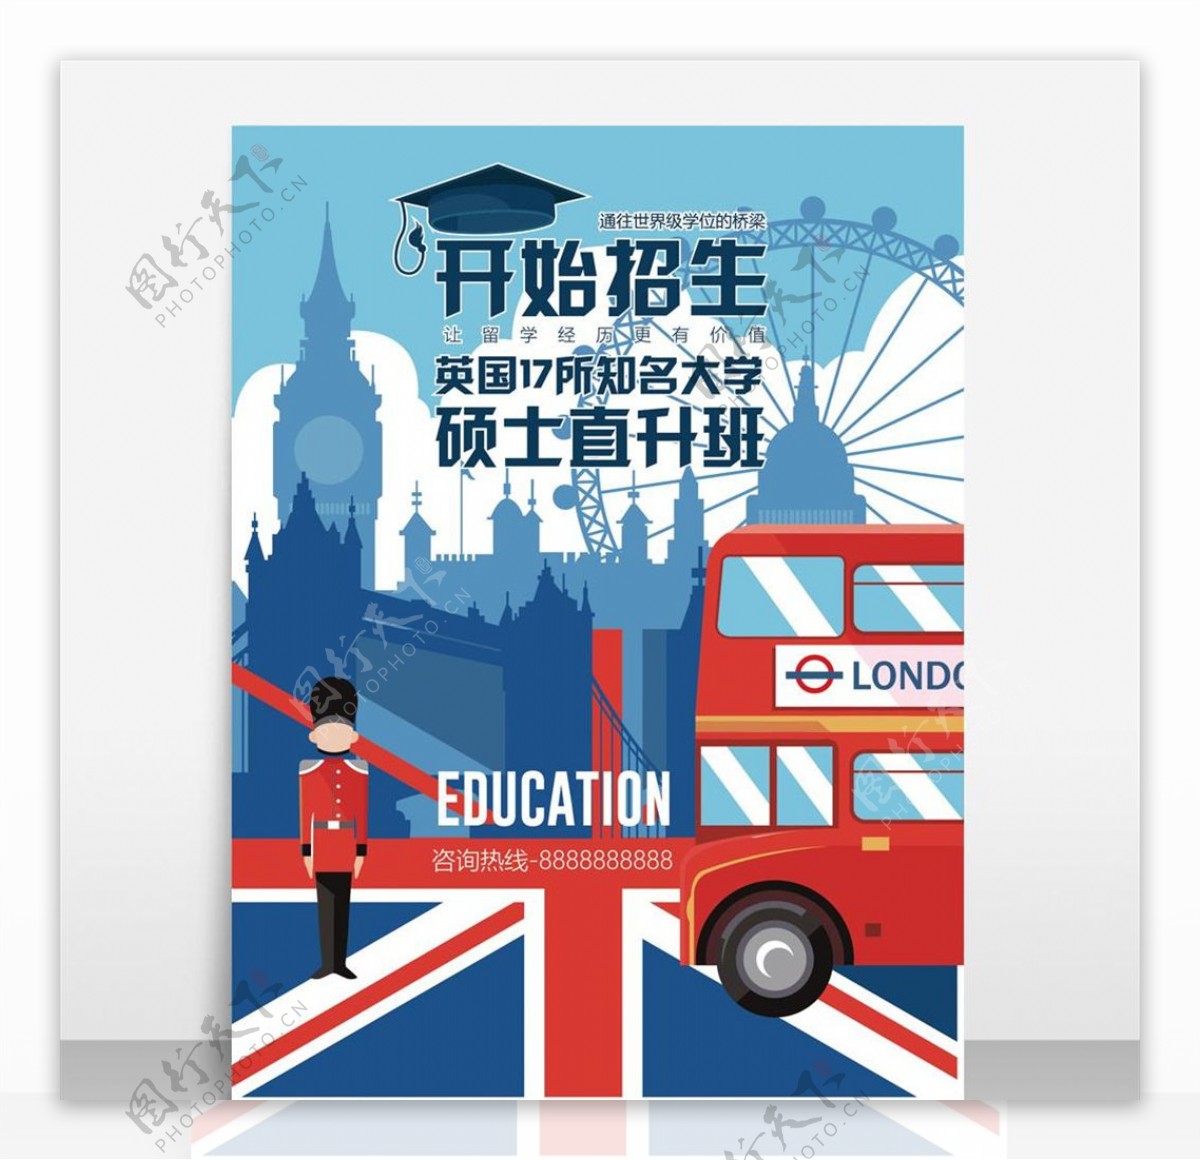 创意英国大学招生教育海报设计模